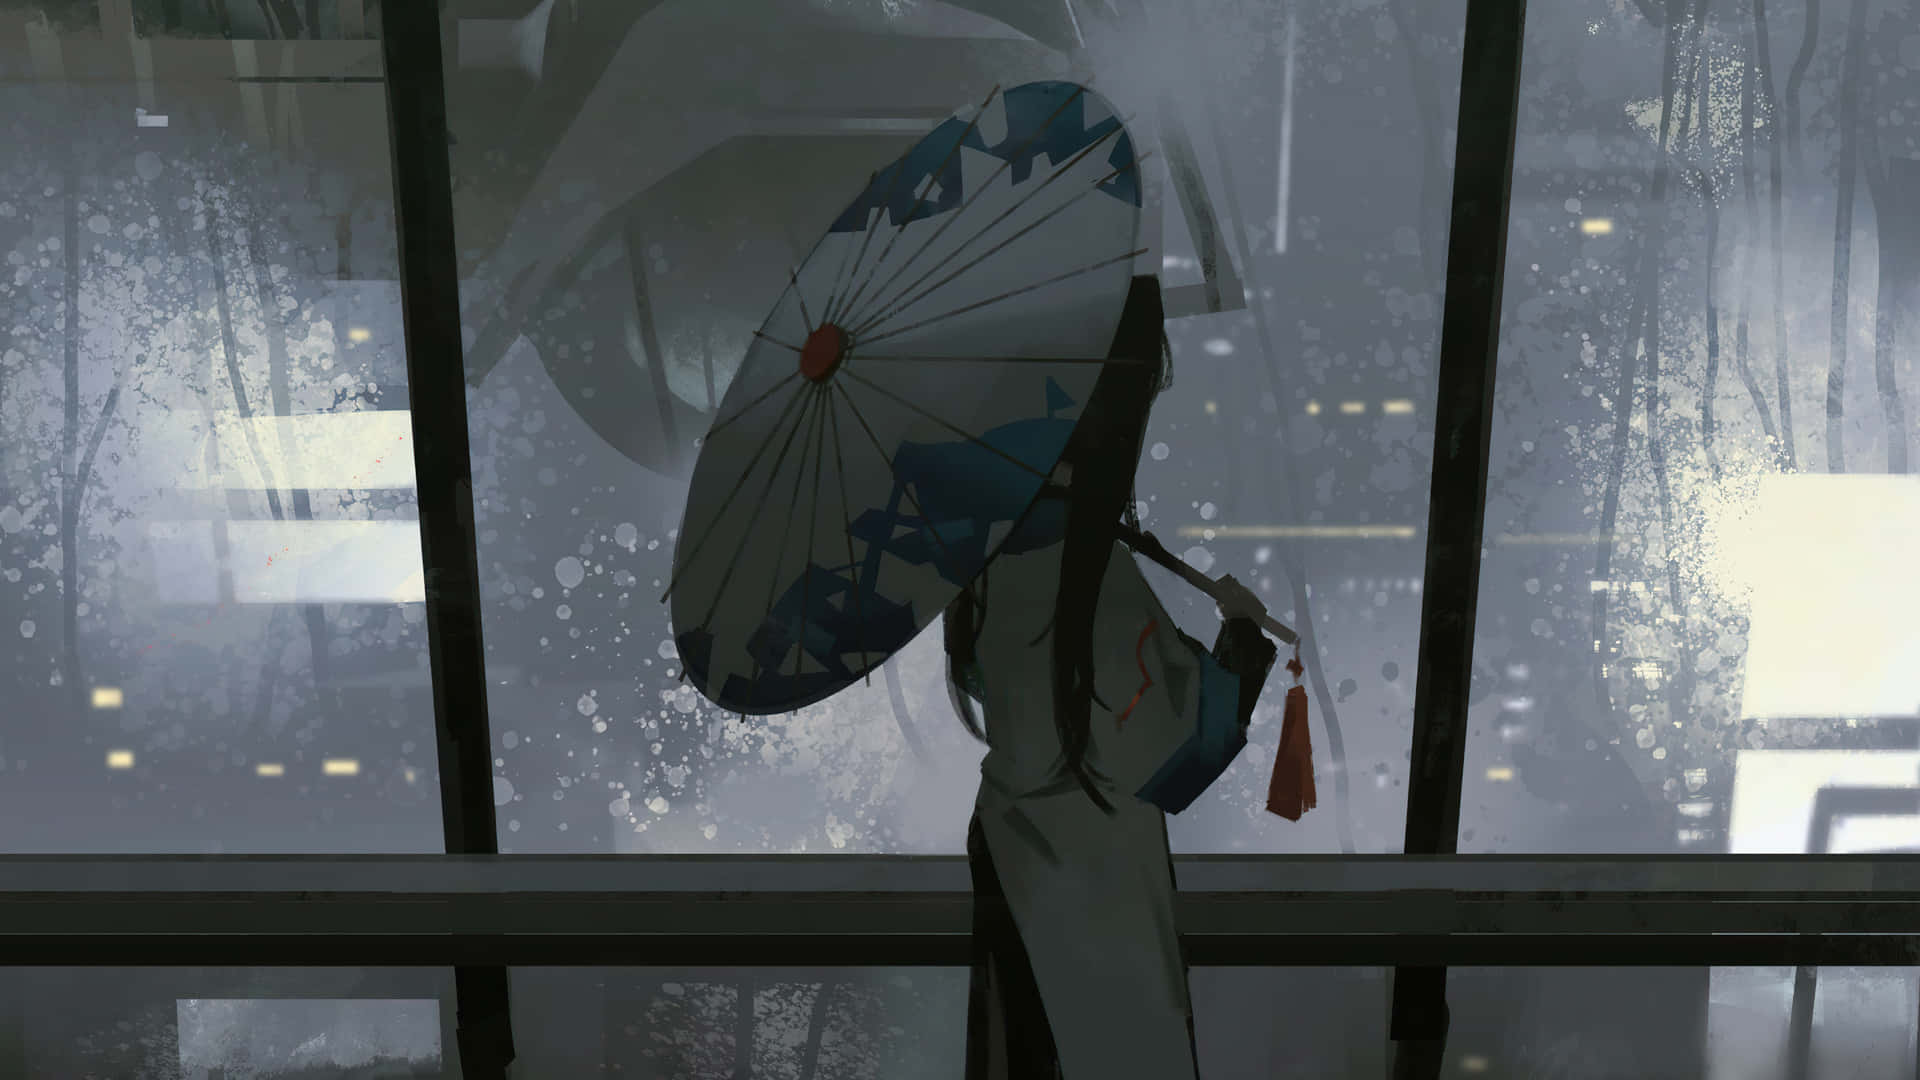 An intriguing dark anime girl shrouded in mystery Wallpaper